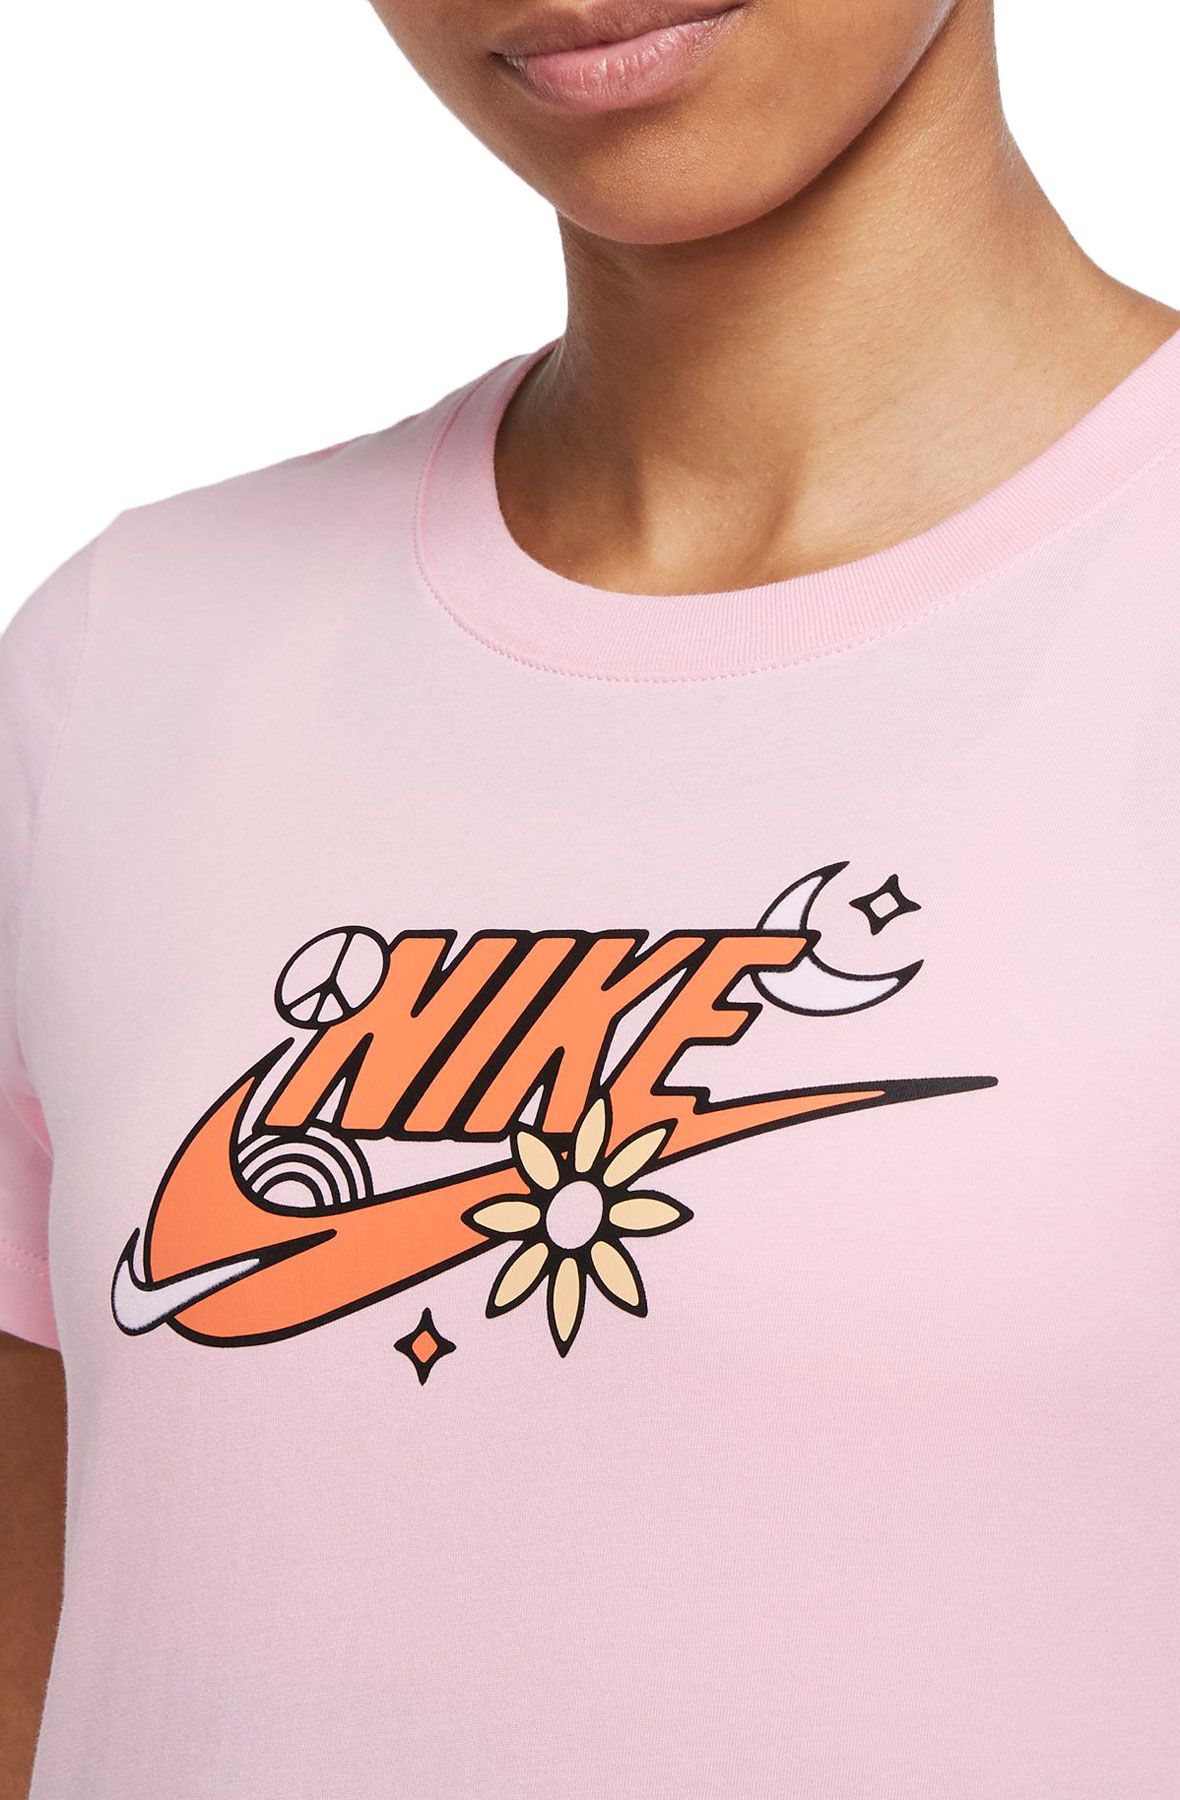 NIKE Sportswear Short Sleeve T-Shirt CV9150 654 - Shiekh